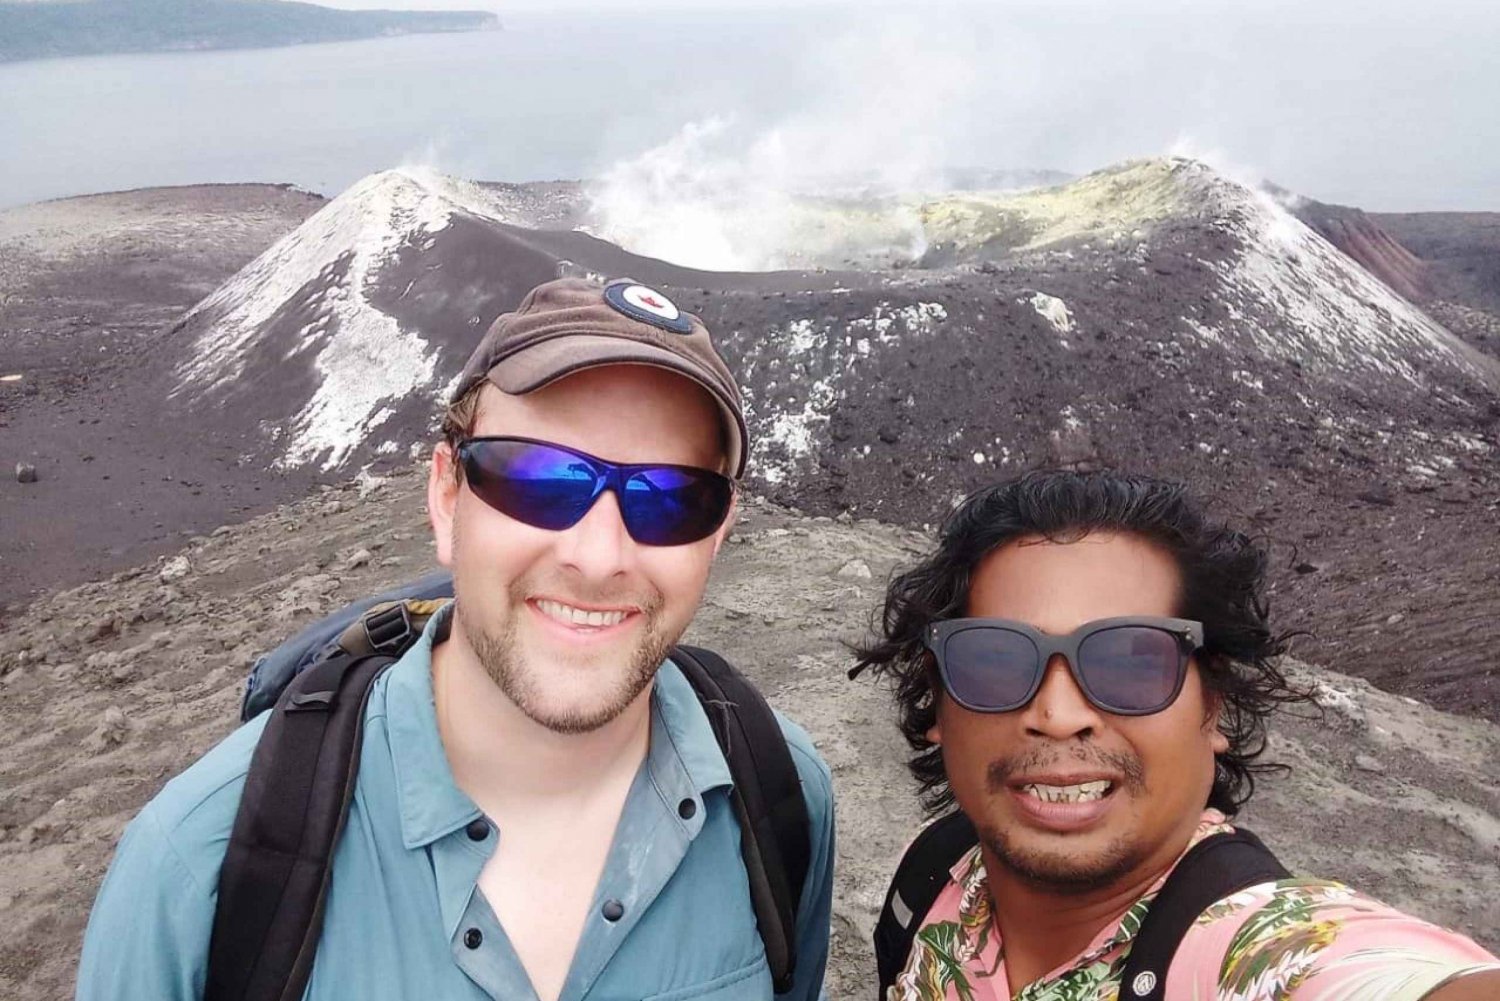 Krakatoa-tulivuori yhden päivän retki Jakartasta käsin